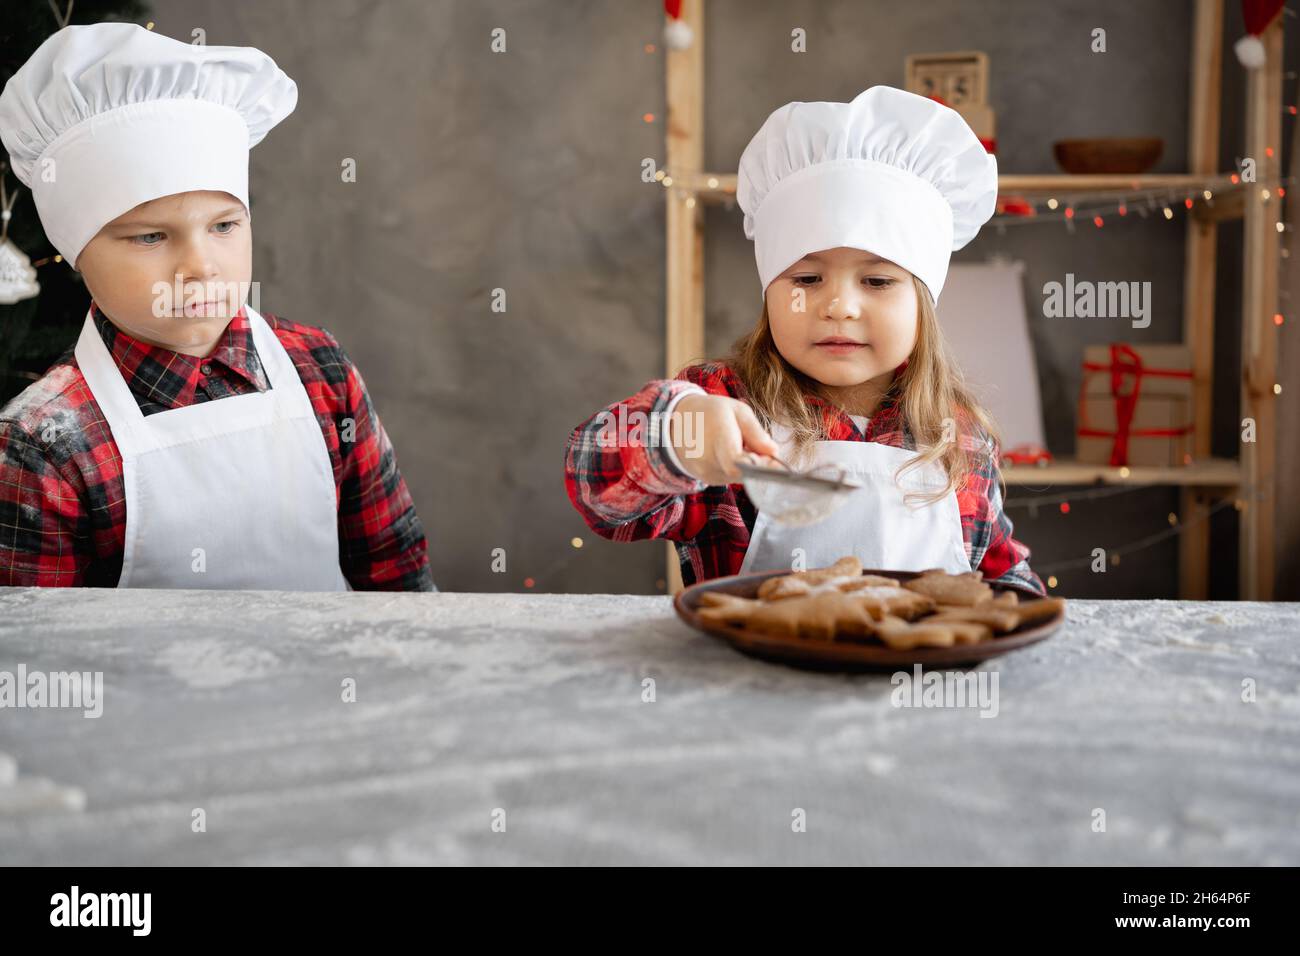 Kinder kochen WeihnachtsLebkuchen. Bruder und Schwester dekorieren in der Küche Kekse mit Puderzucker. Kleines Bäckermädchen. Hausgemachte Kuchen. Stockfoto